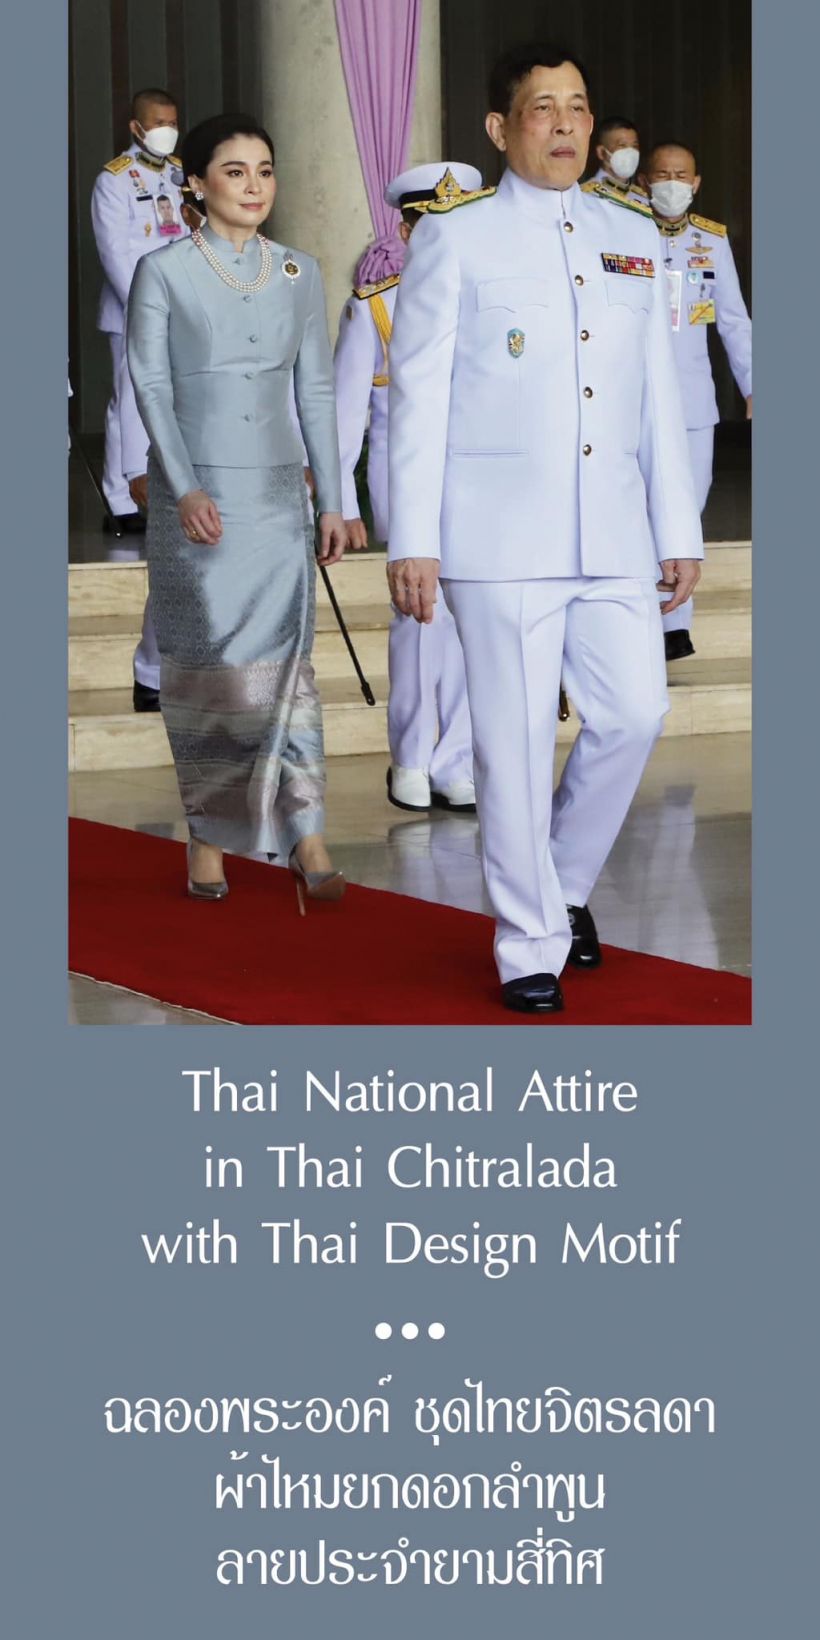 พระราชินีฉลองพระองค์ชุดไทยผ้าไหมยกดอกลำพูน เสด็จฯเปิดประชุมรัฐสภา